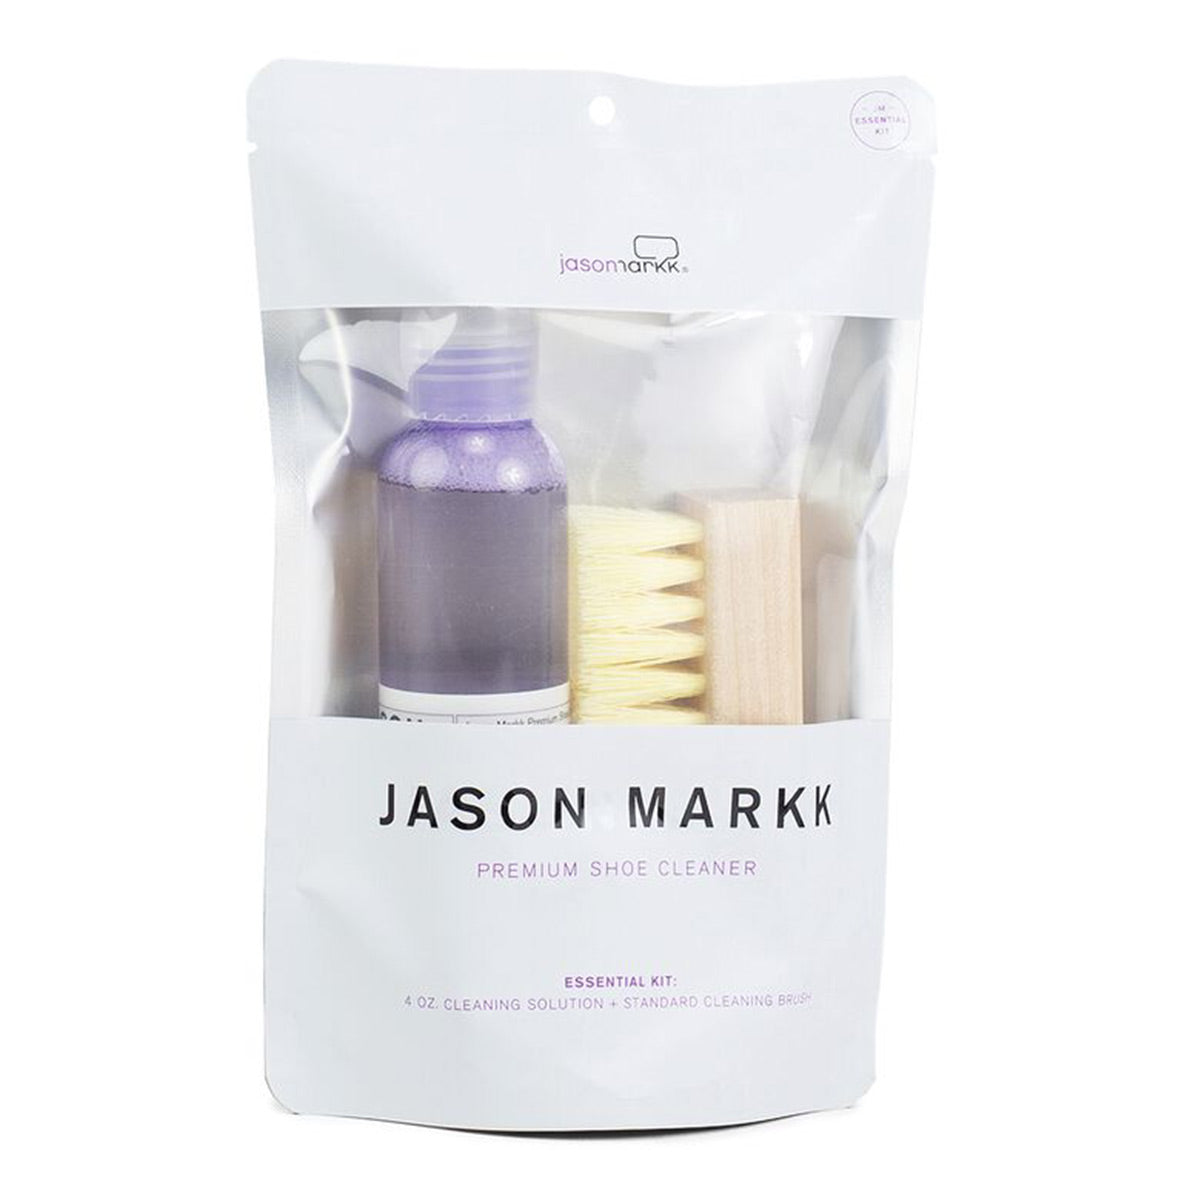 Jason Markk - Premium Cleaning Brush